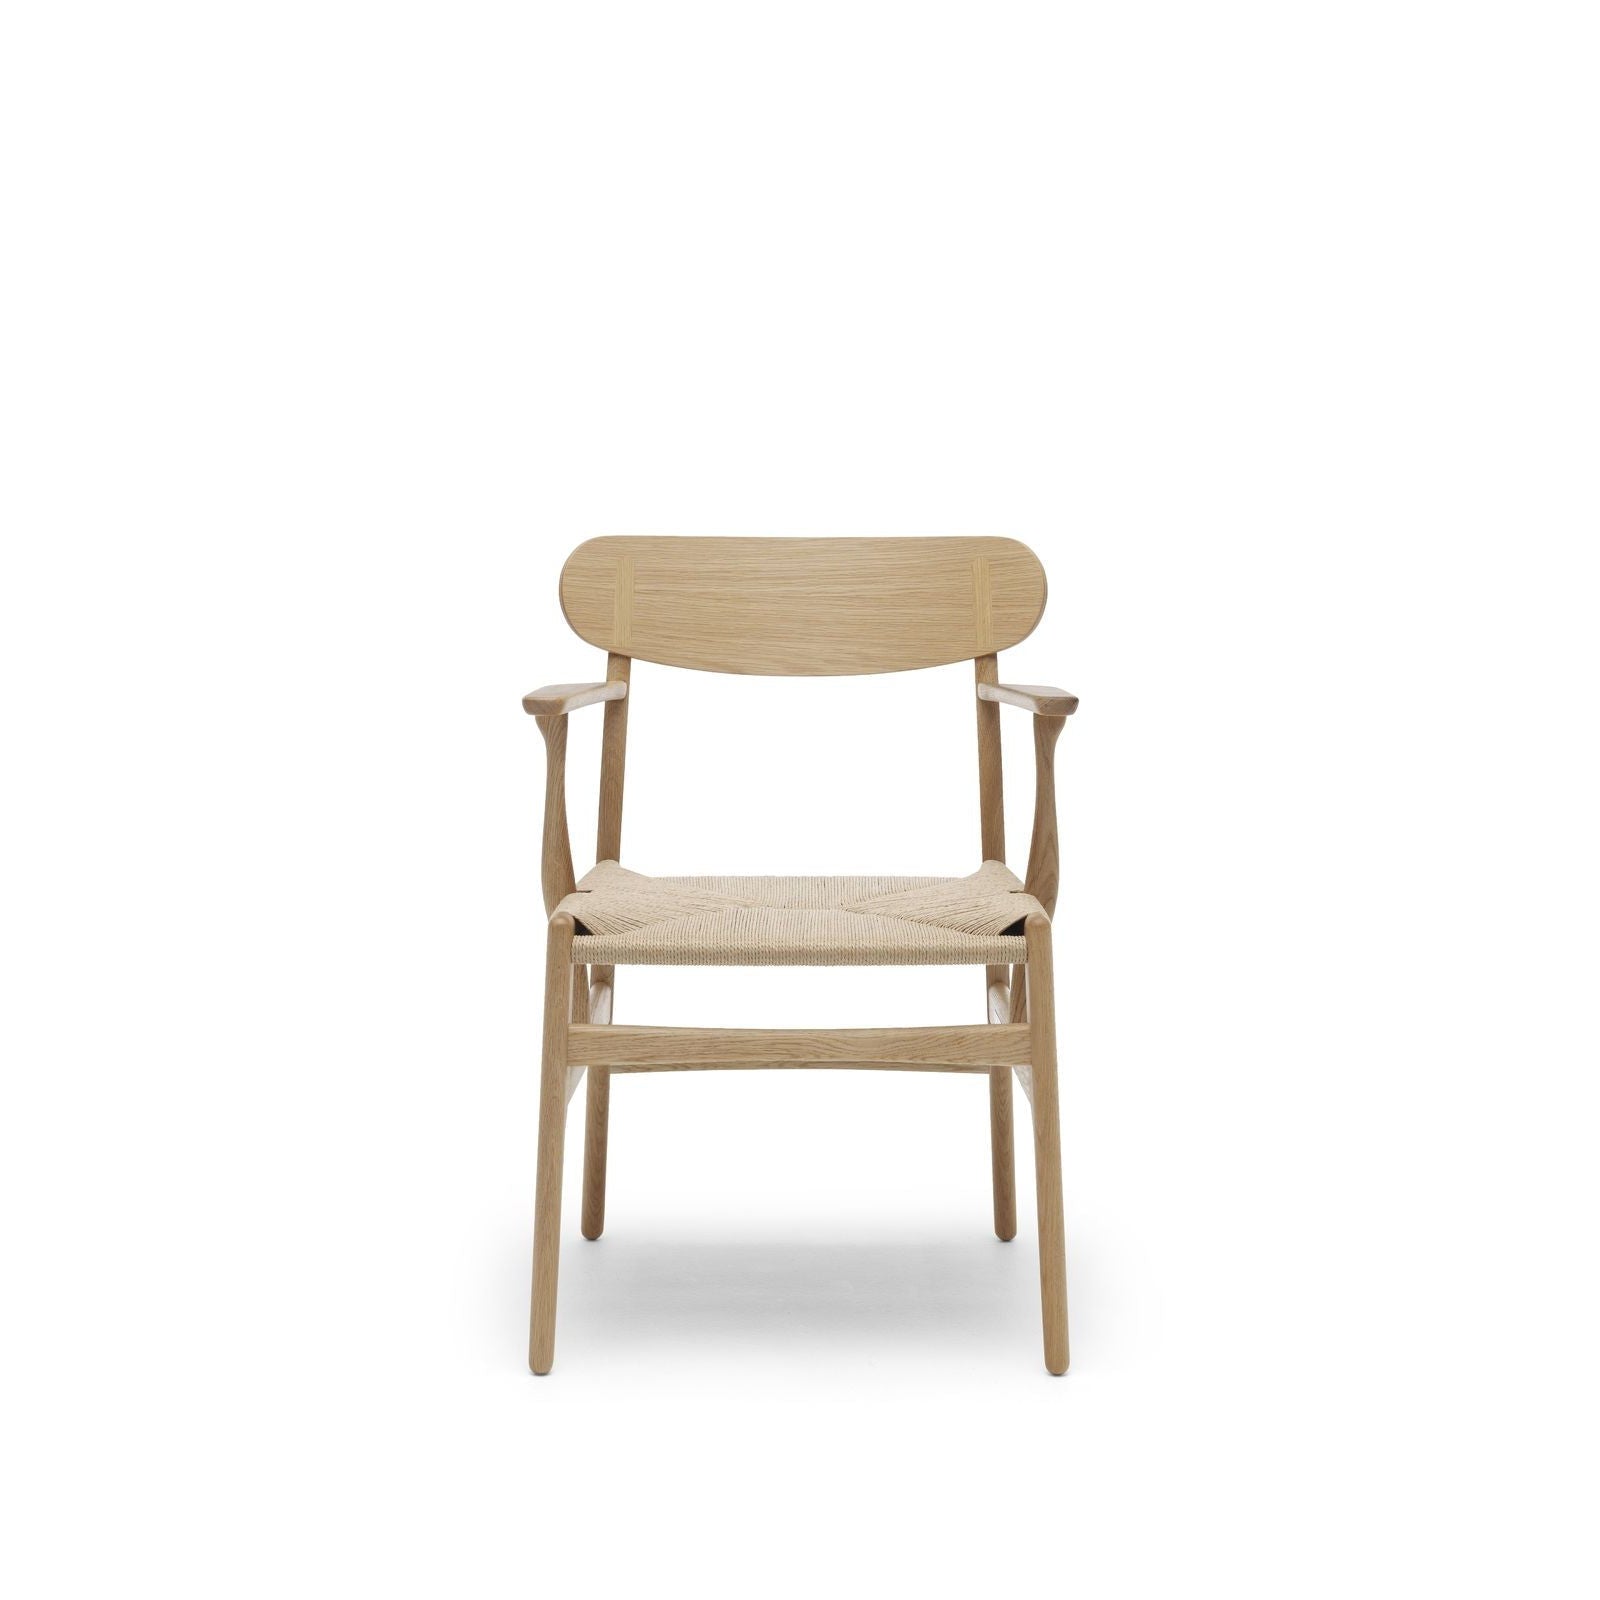 Carl Hansen Cushion For Ch26 Chair, Loke 7100